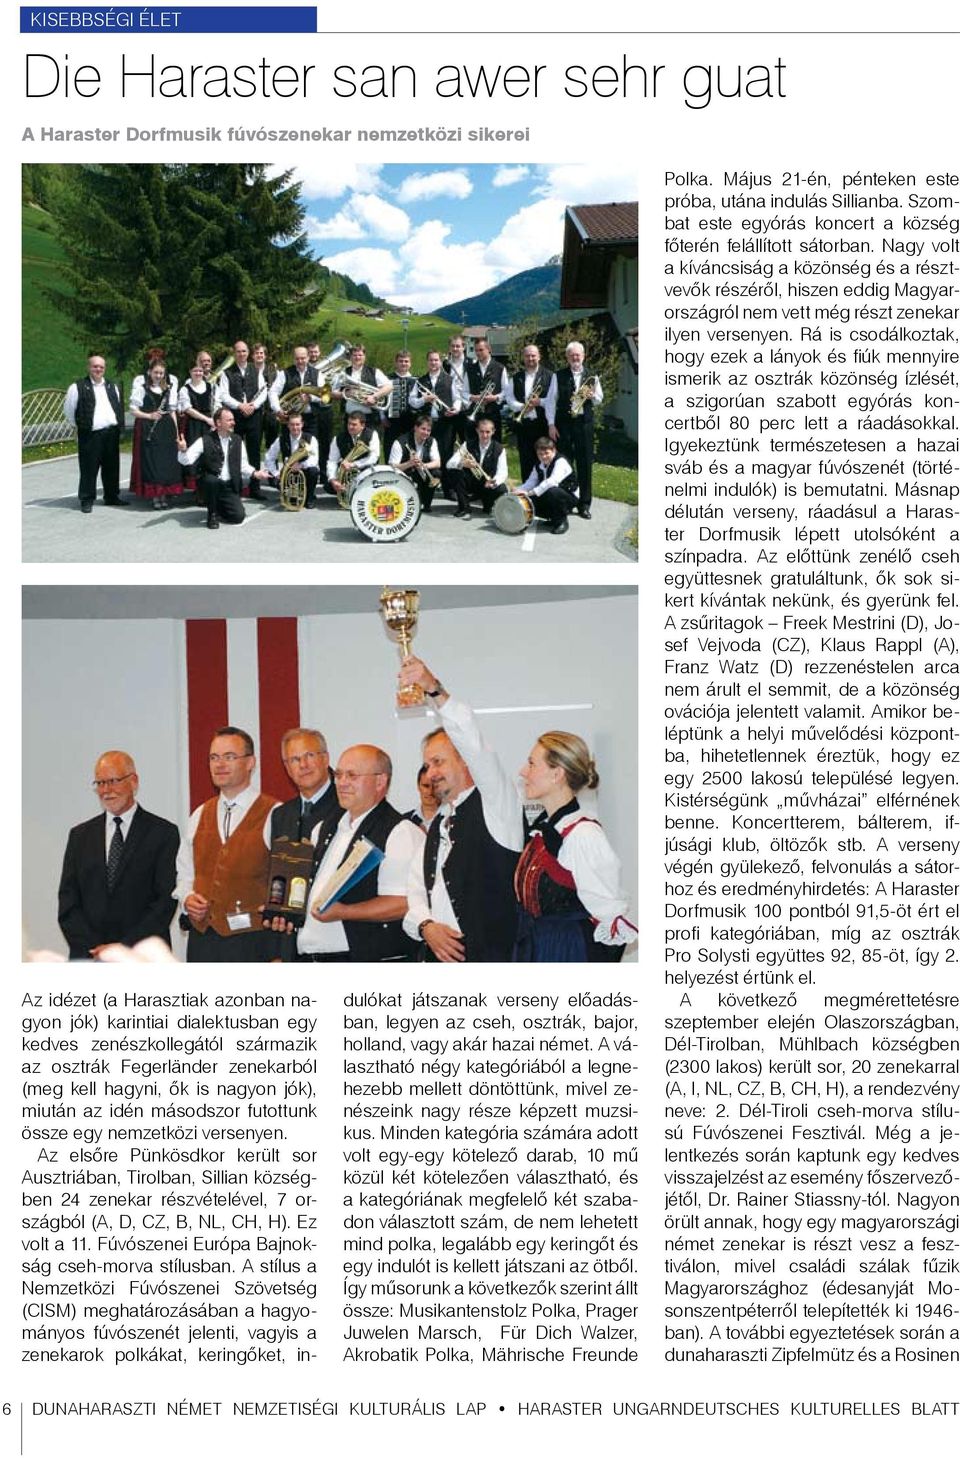 Az elsőre Pünkösdkor került sor Ausztriában, Tirolban, Sillian községben 24 zenekar részvételével, 7 országból (A, D, CZ, B, NL, CH, H). Ez volt a 11. Fúvószenei Európa Bajnokság cseh-morva stílusban.